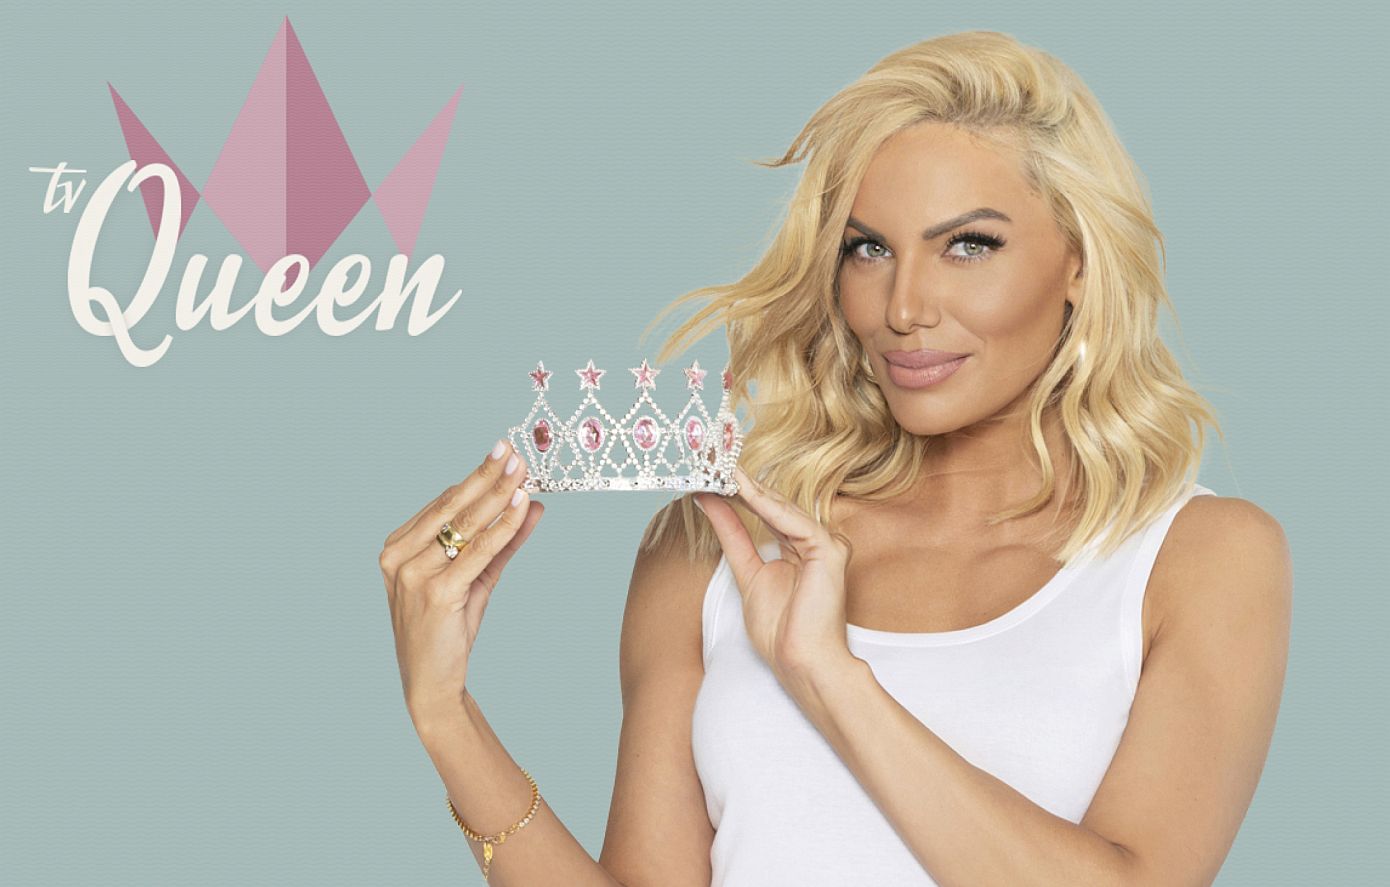 Το Tv Queen έρχεται στην τηλεόραση του OPEN απόψε στις 9 το βράδυ – Παρουσιάζει η Ιωάννα Μαλέσκου